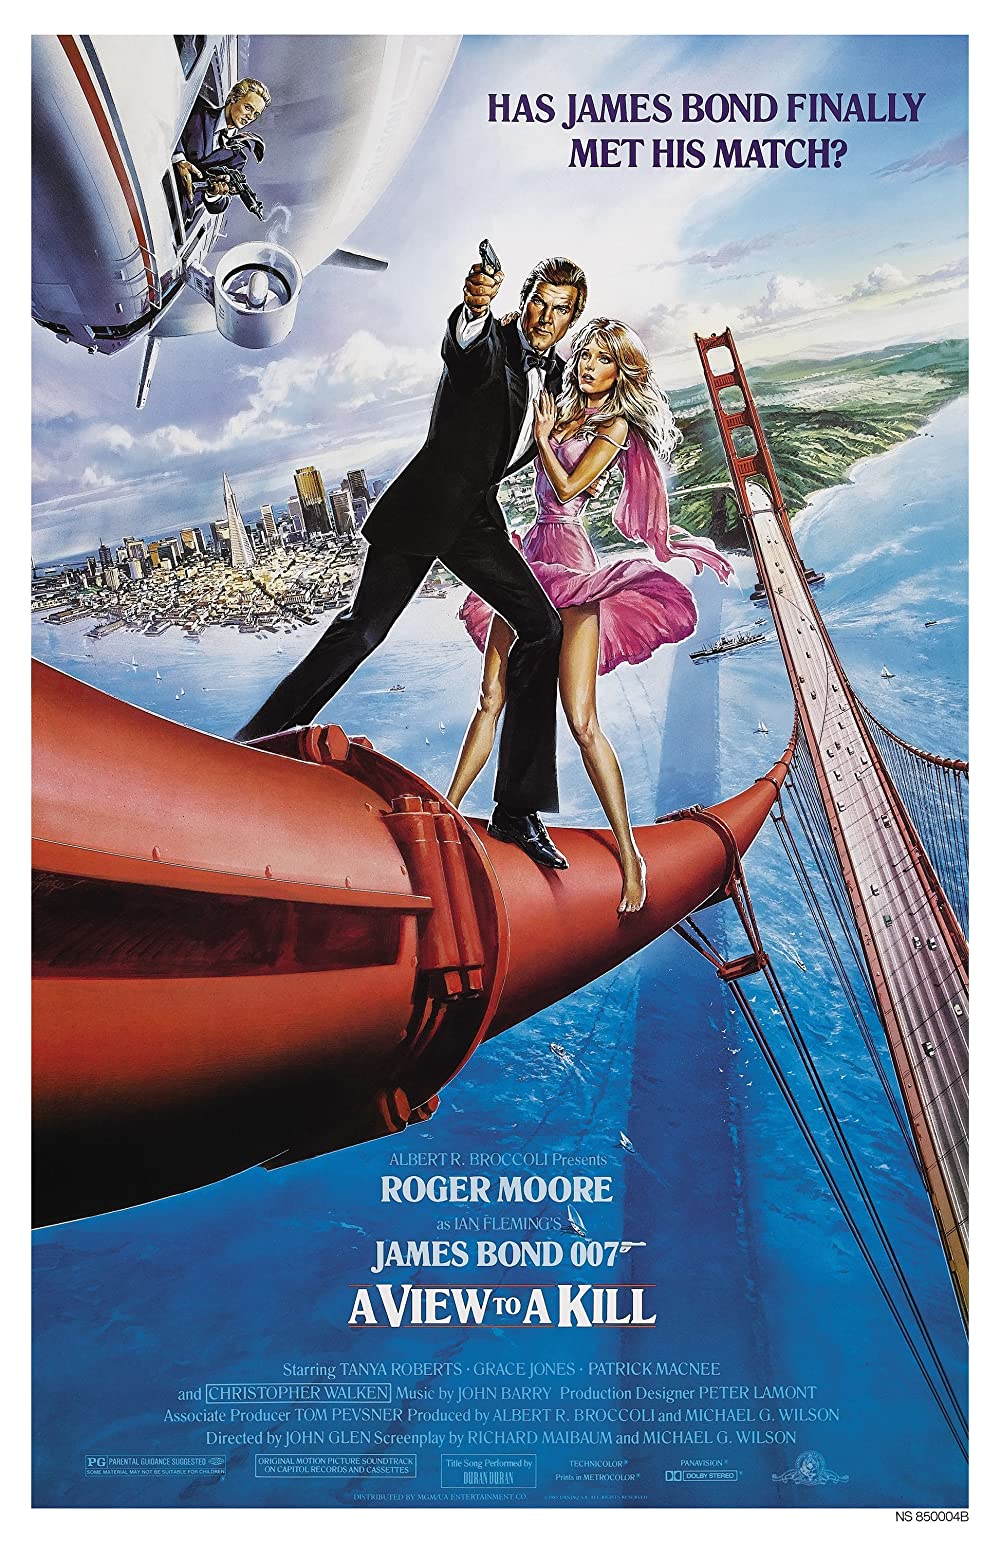 Filmbeschreibung zu James Bond - Im Angesicht des Todes